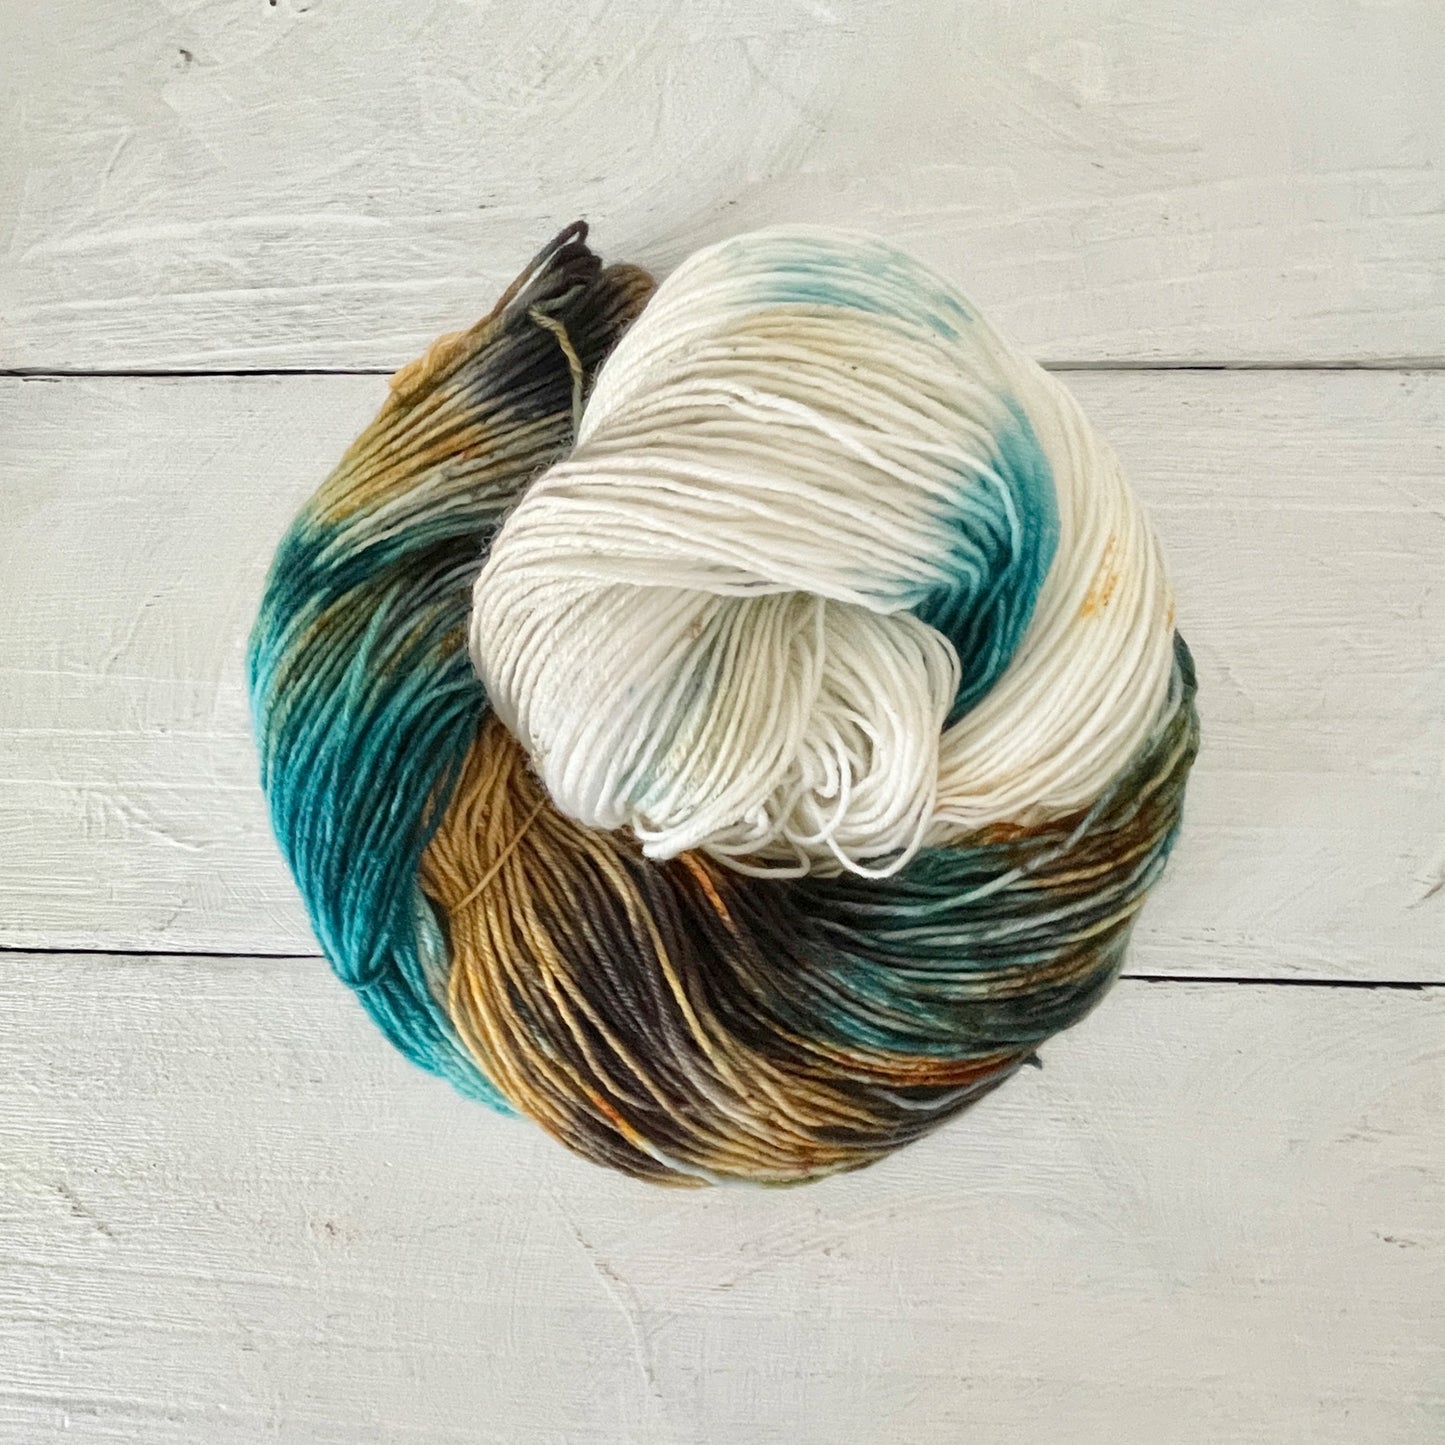 Hand-dyed yarn No.205 sock yarn "Gretchen am Spinnrade"